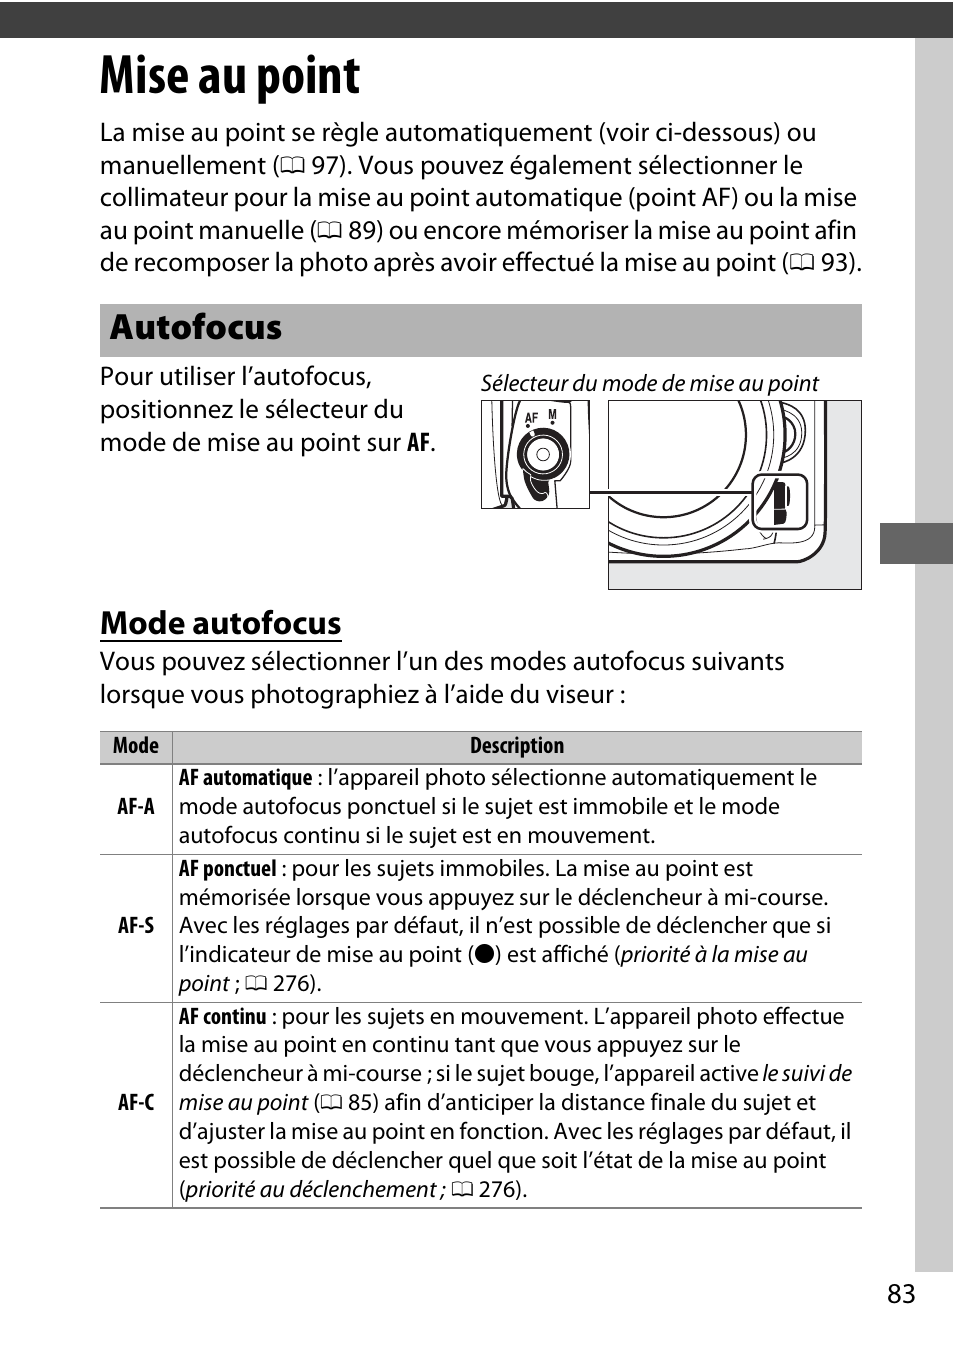 Mise au point, Autofocus, Mode autofocus | Nikon D7200 body Manuel d'utilisation | Page 107 / 420